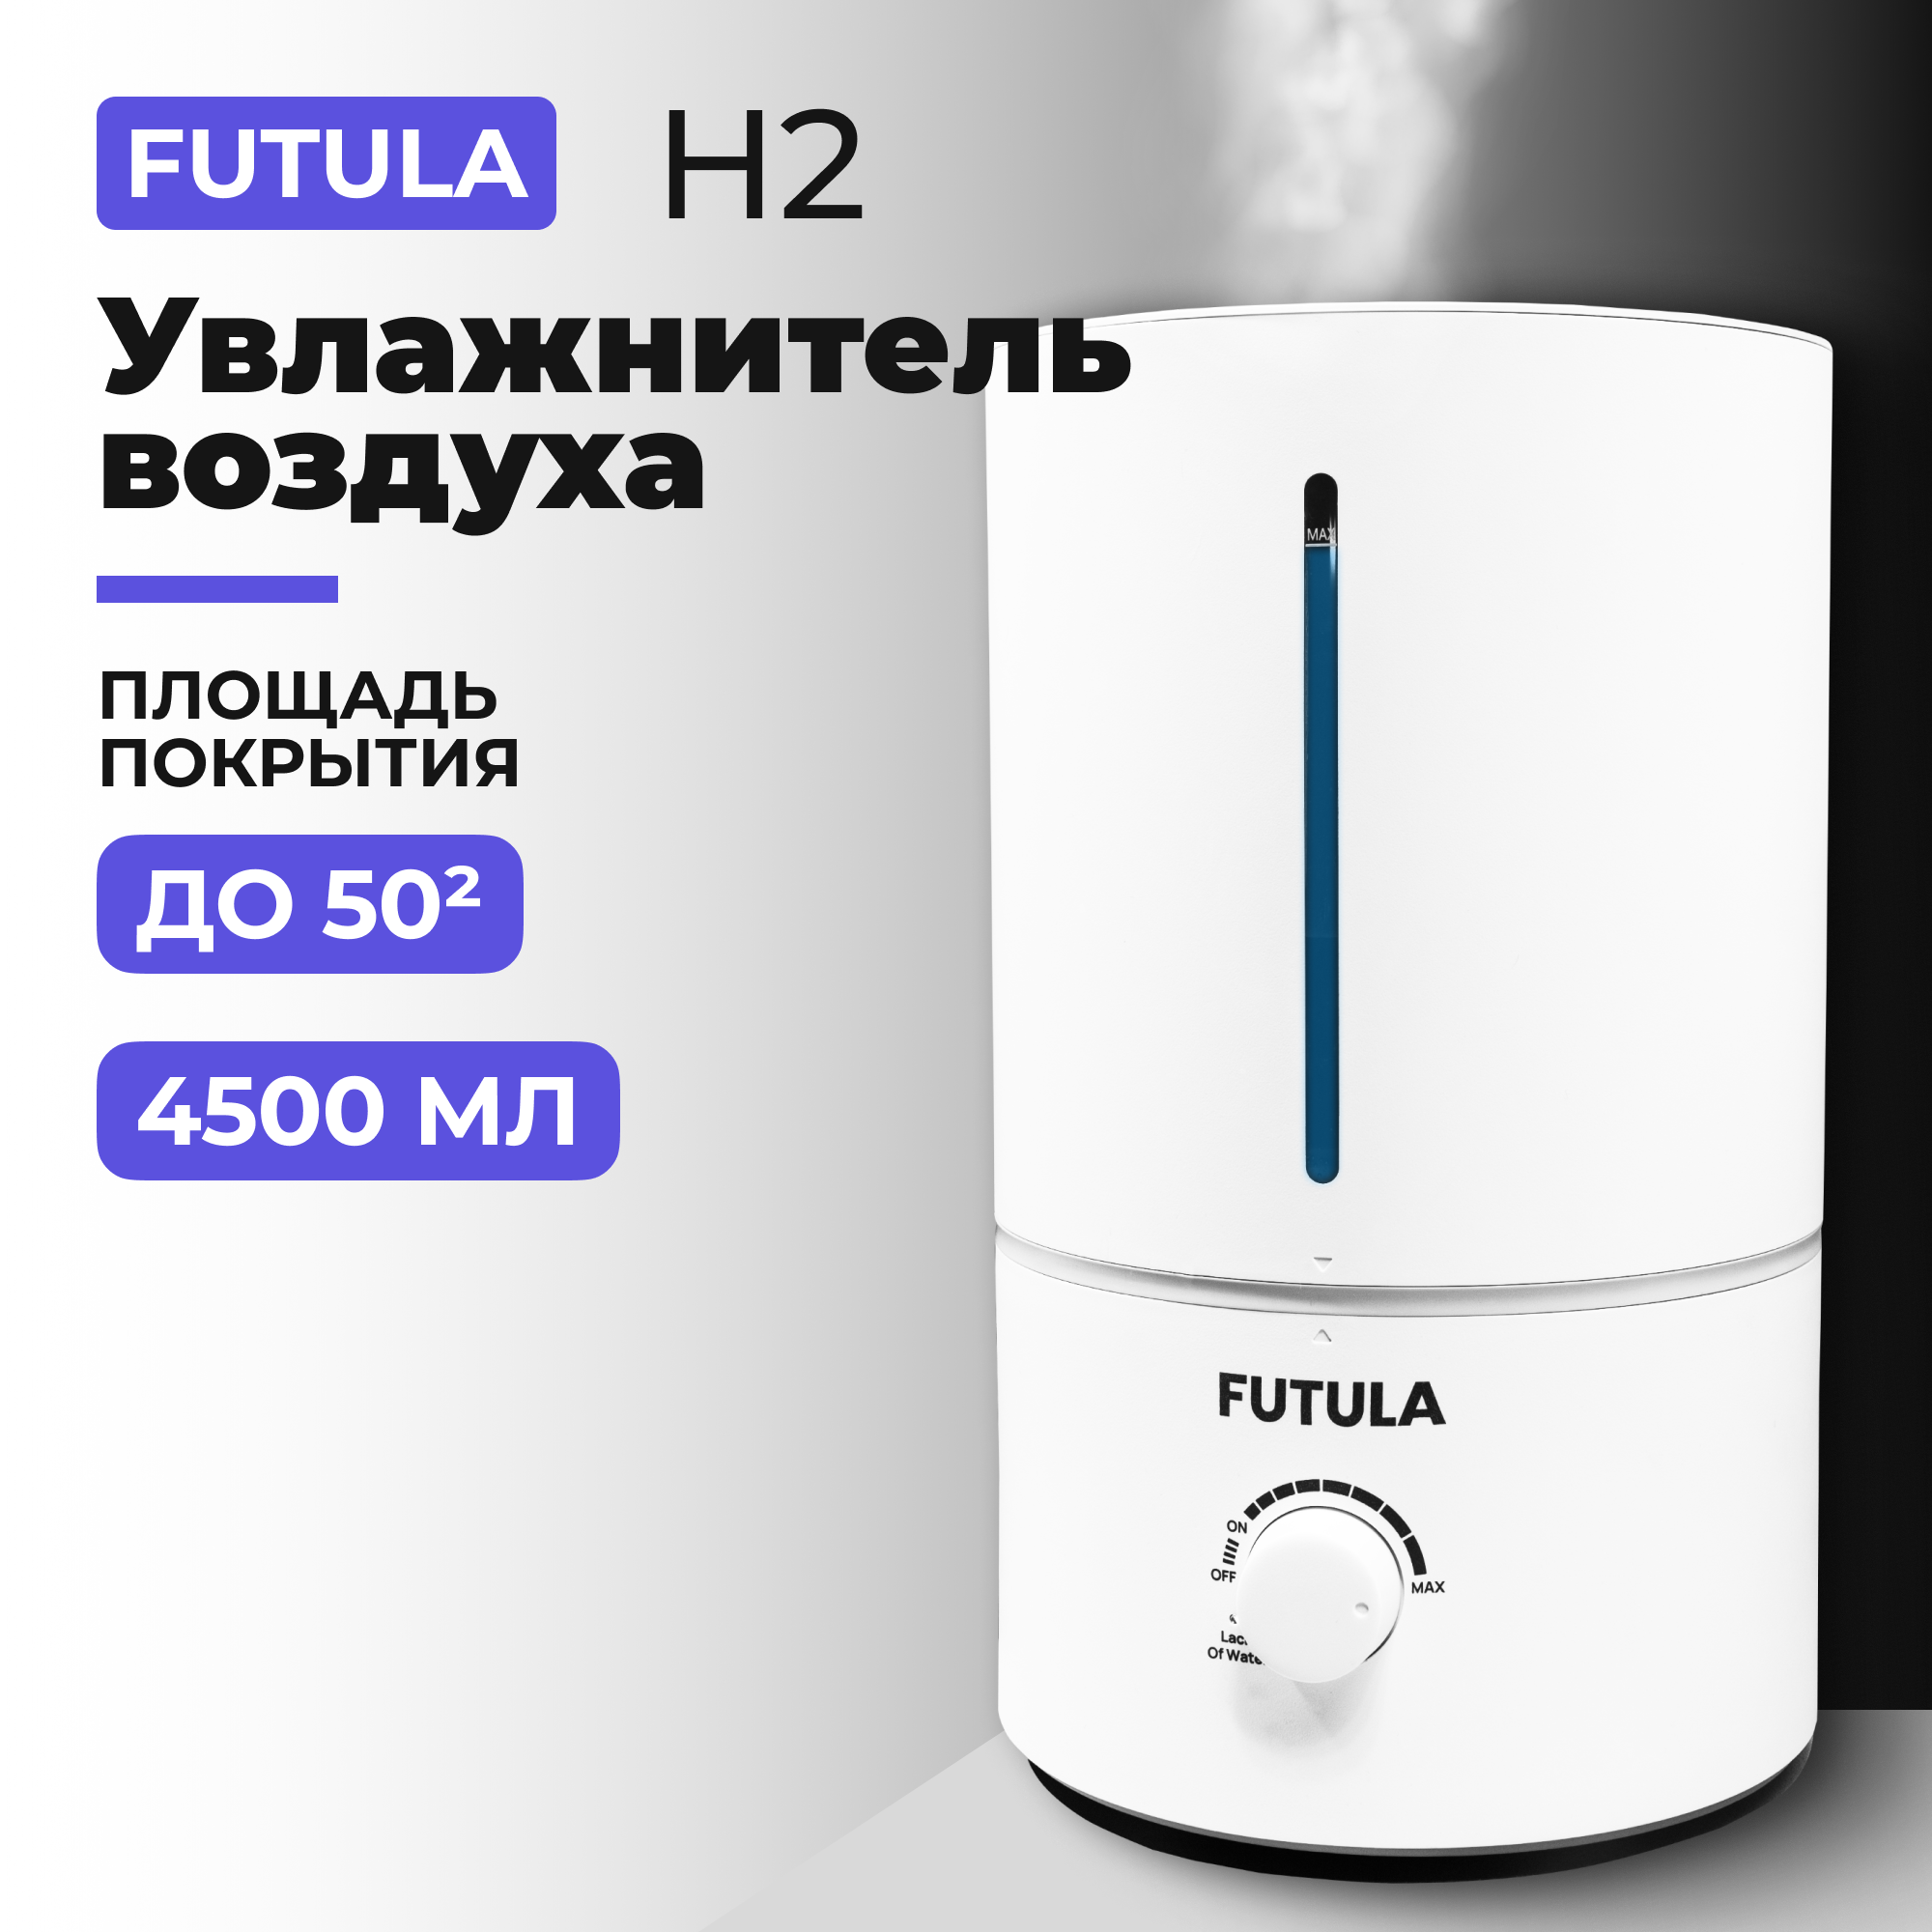 Воздухоувлажнитель Futula H2 белый воздухоувлажнитель hi hhf 3040